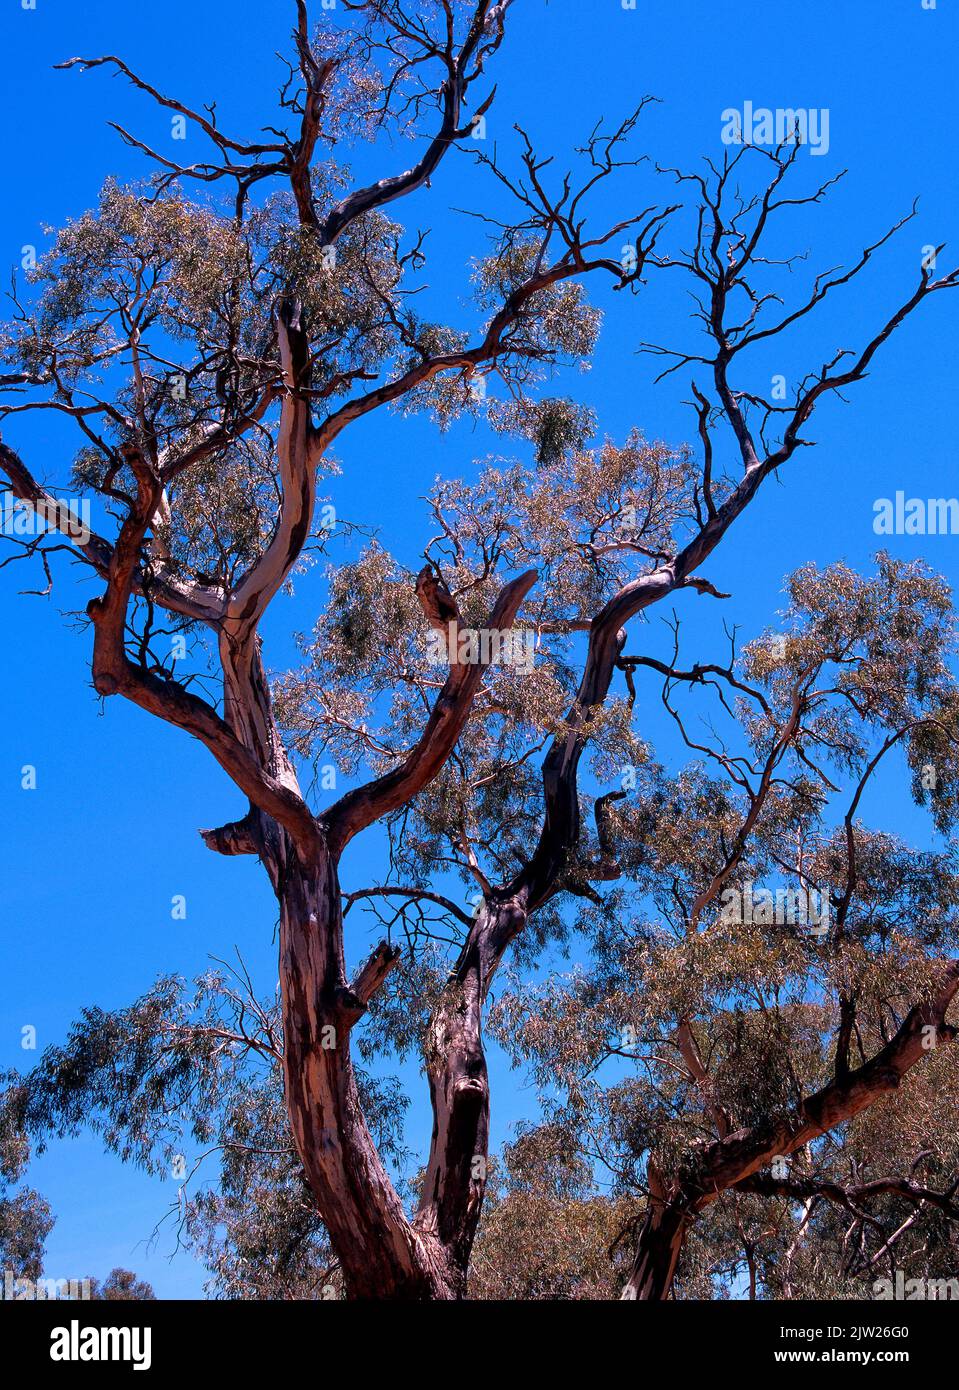 Eucalyptus Tree branches, Southwest Australia, Stock Photo